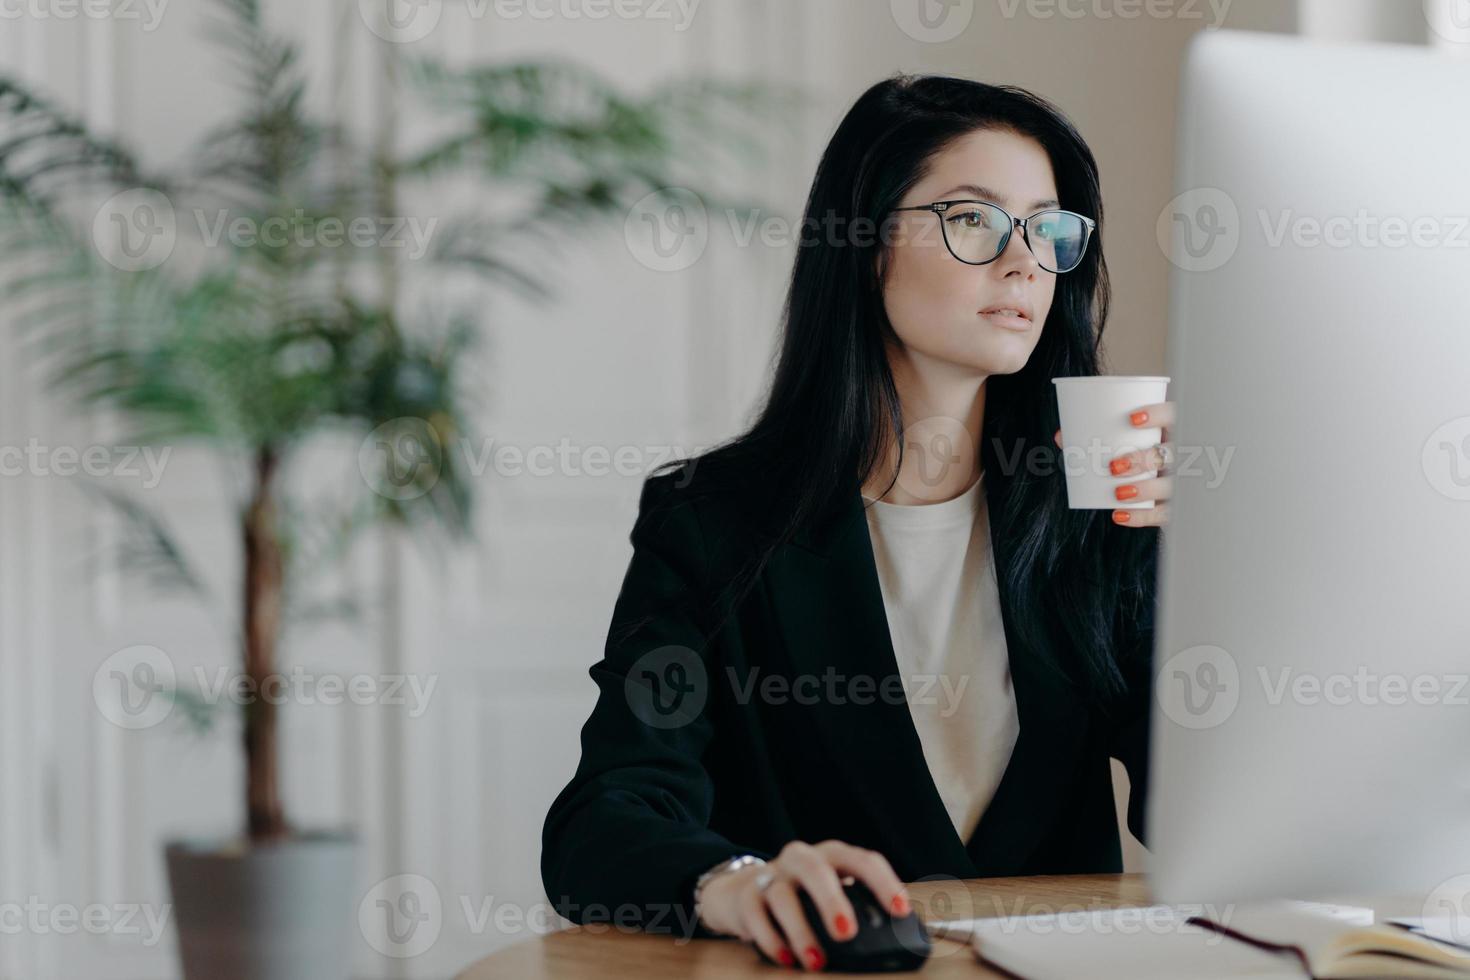 une jeune femme administrative occupée pose au bureau, boit du café chaud dans une tasse en papier, s'habille formellement, développe une stratégie commerciale, planifie le démarrage, est impliquée dans le processus de travail. notion de métier photo